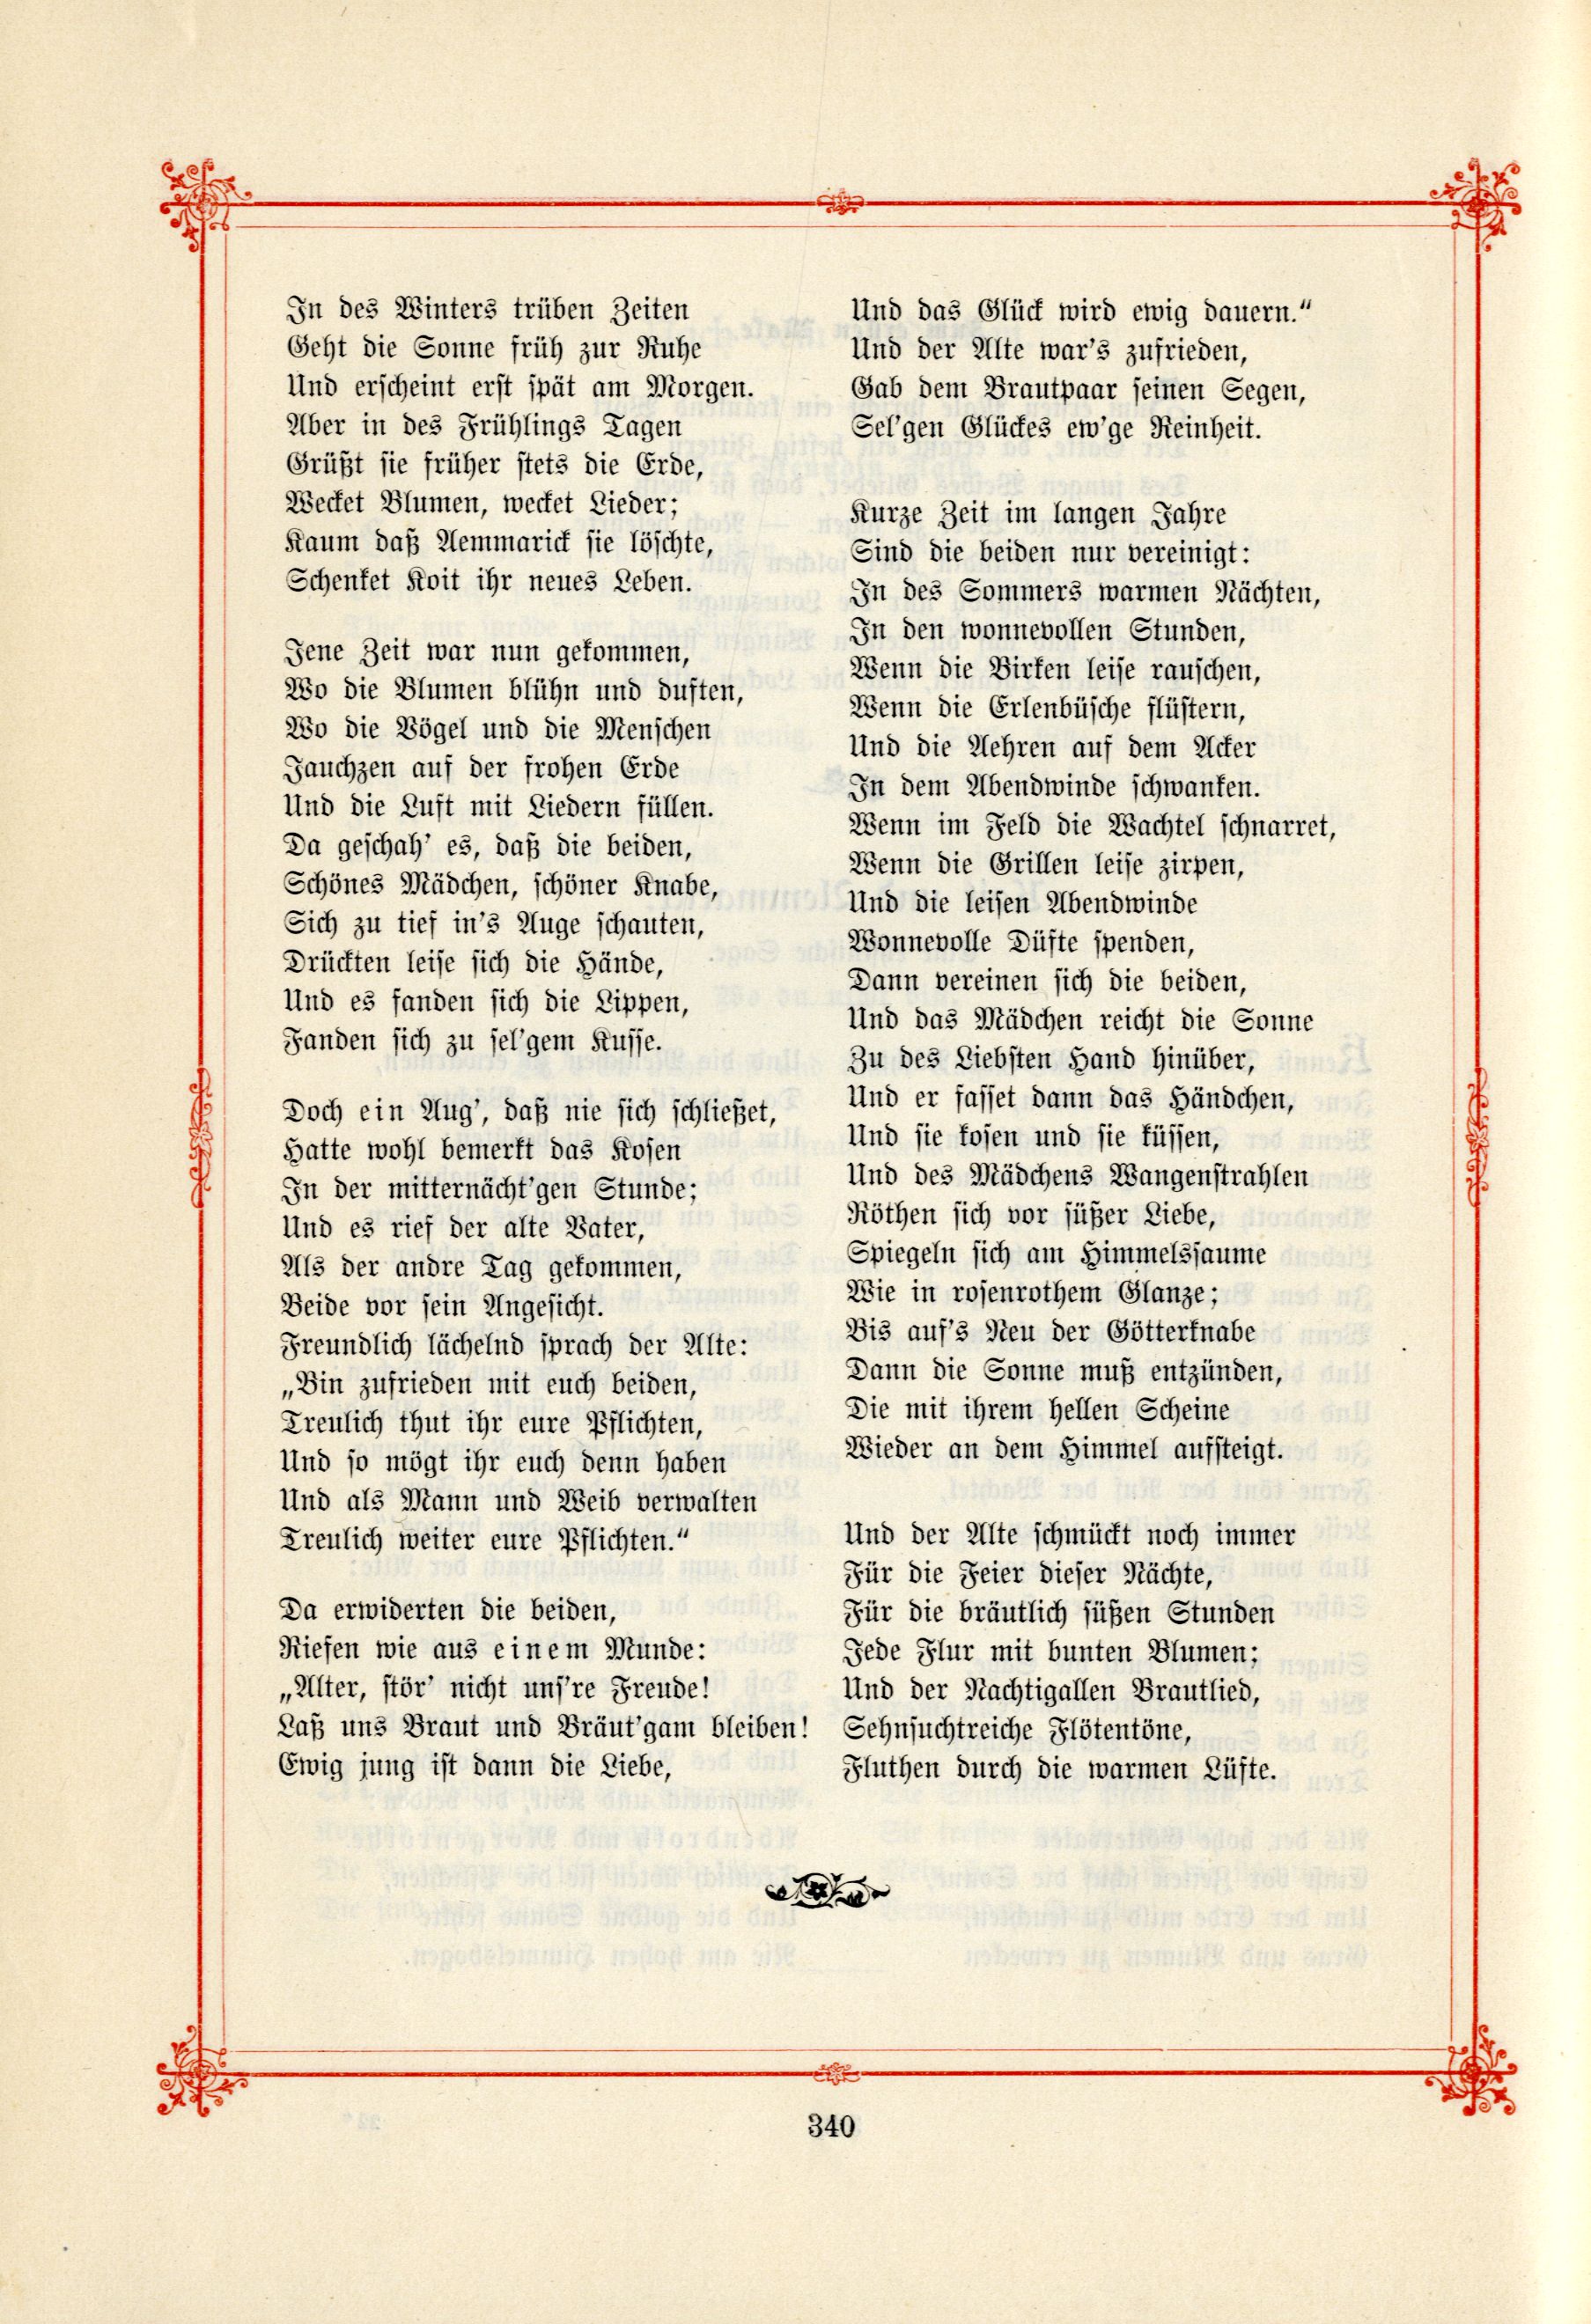 Das Baltische Dichterbuch (1895) | 386. (340) Main body of text